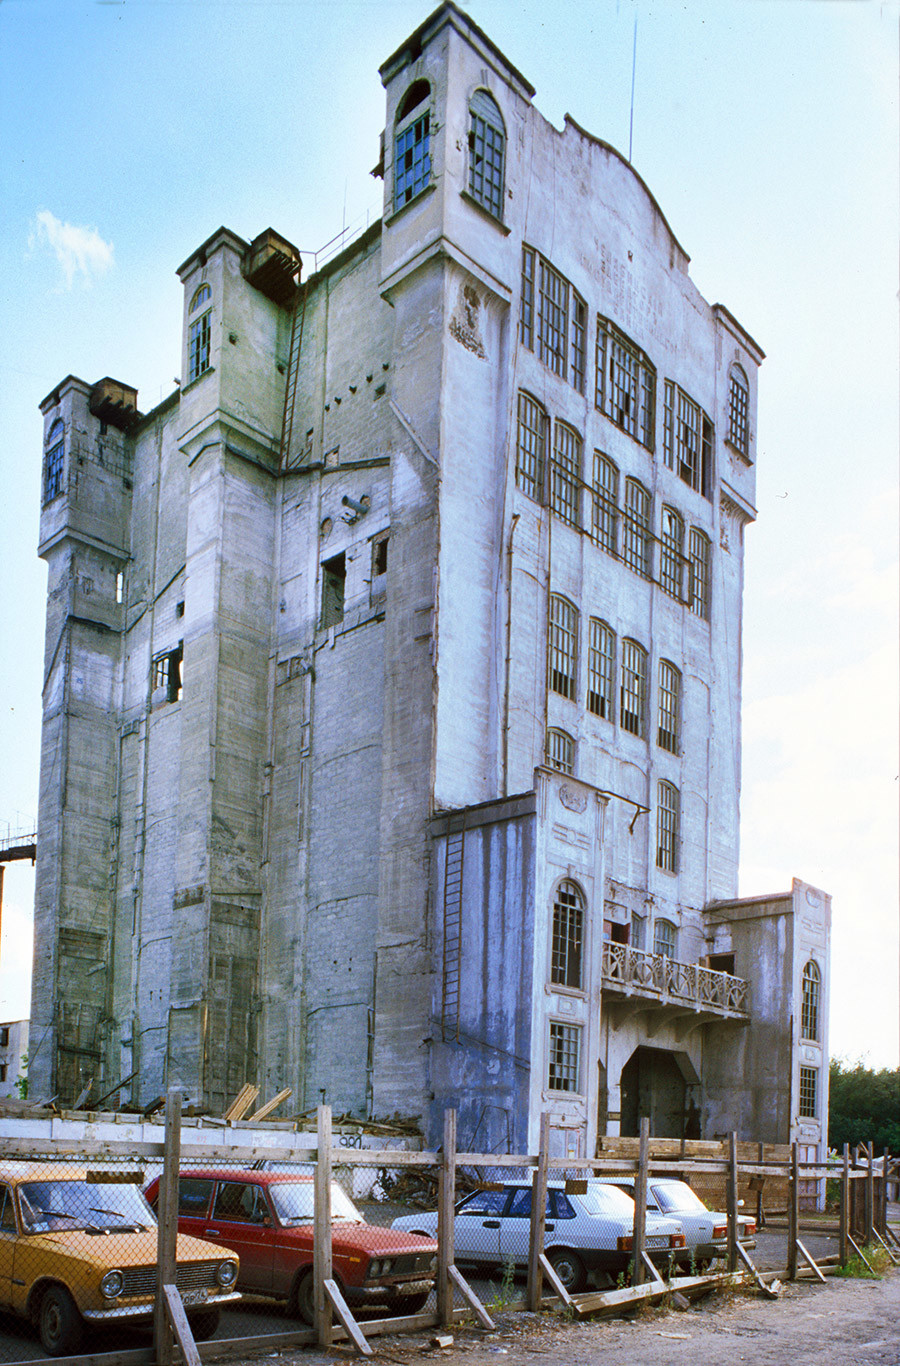 Državna shramba za žito. Zgrajena leta 1914-16 z napredno tehnologijo armiranega betona kot del nacionalnega programa za skladišča žita. Uporabljena do devetdesetih let, nato delno porušena. 12. julij 2003.
